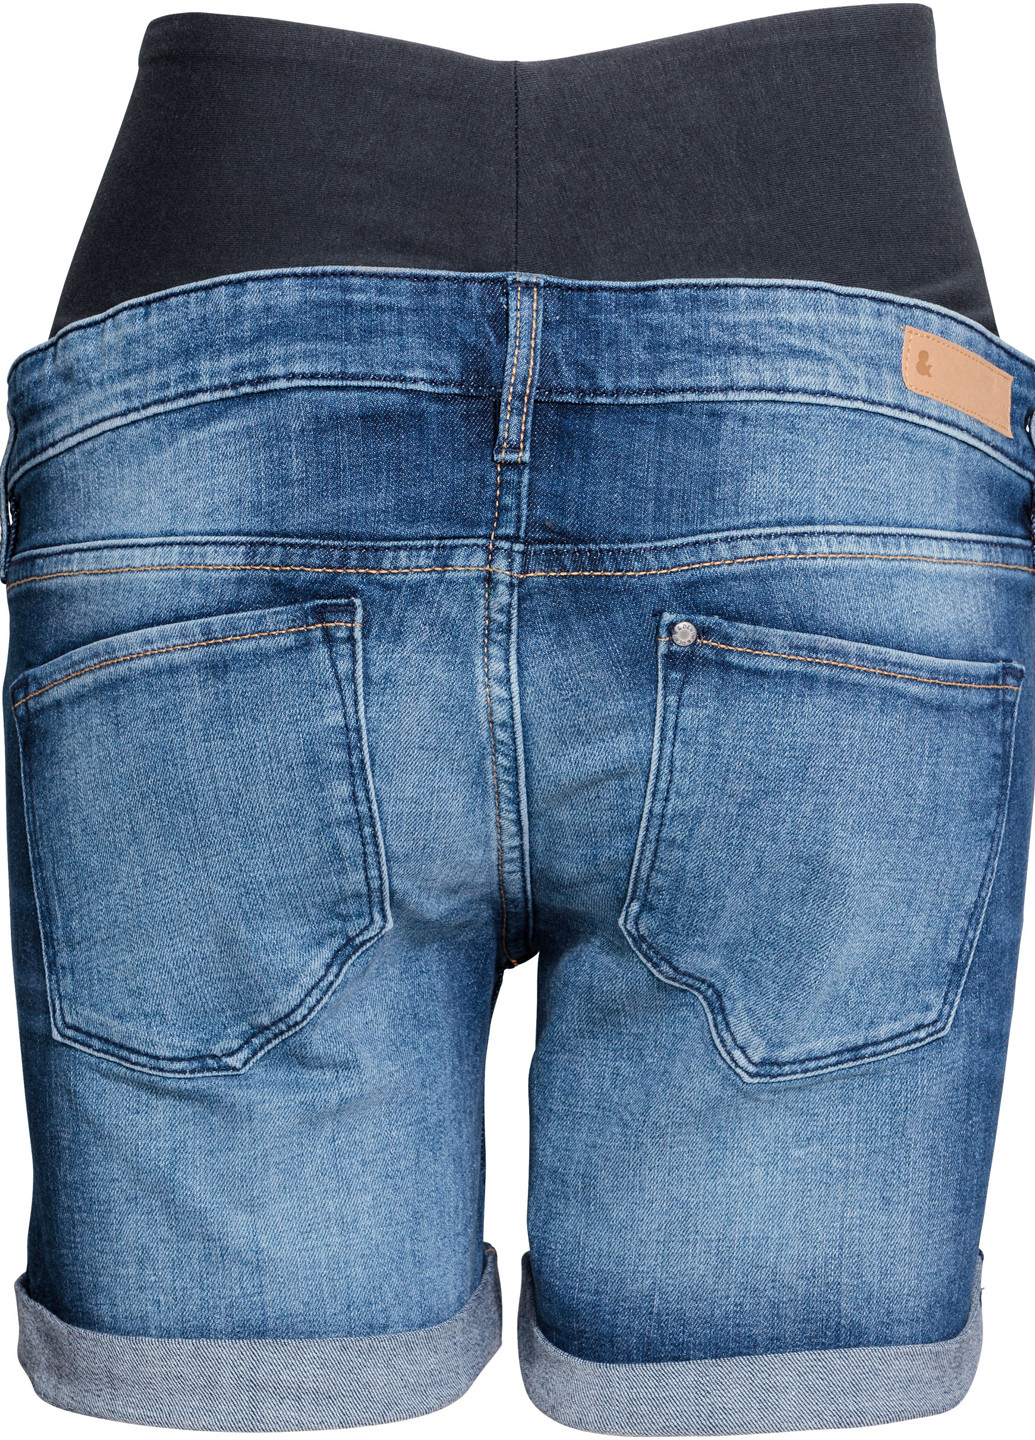 Шорты для беременных H&M синие джинсовые хлопок